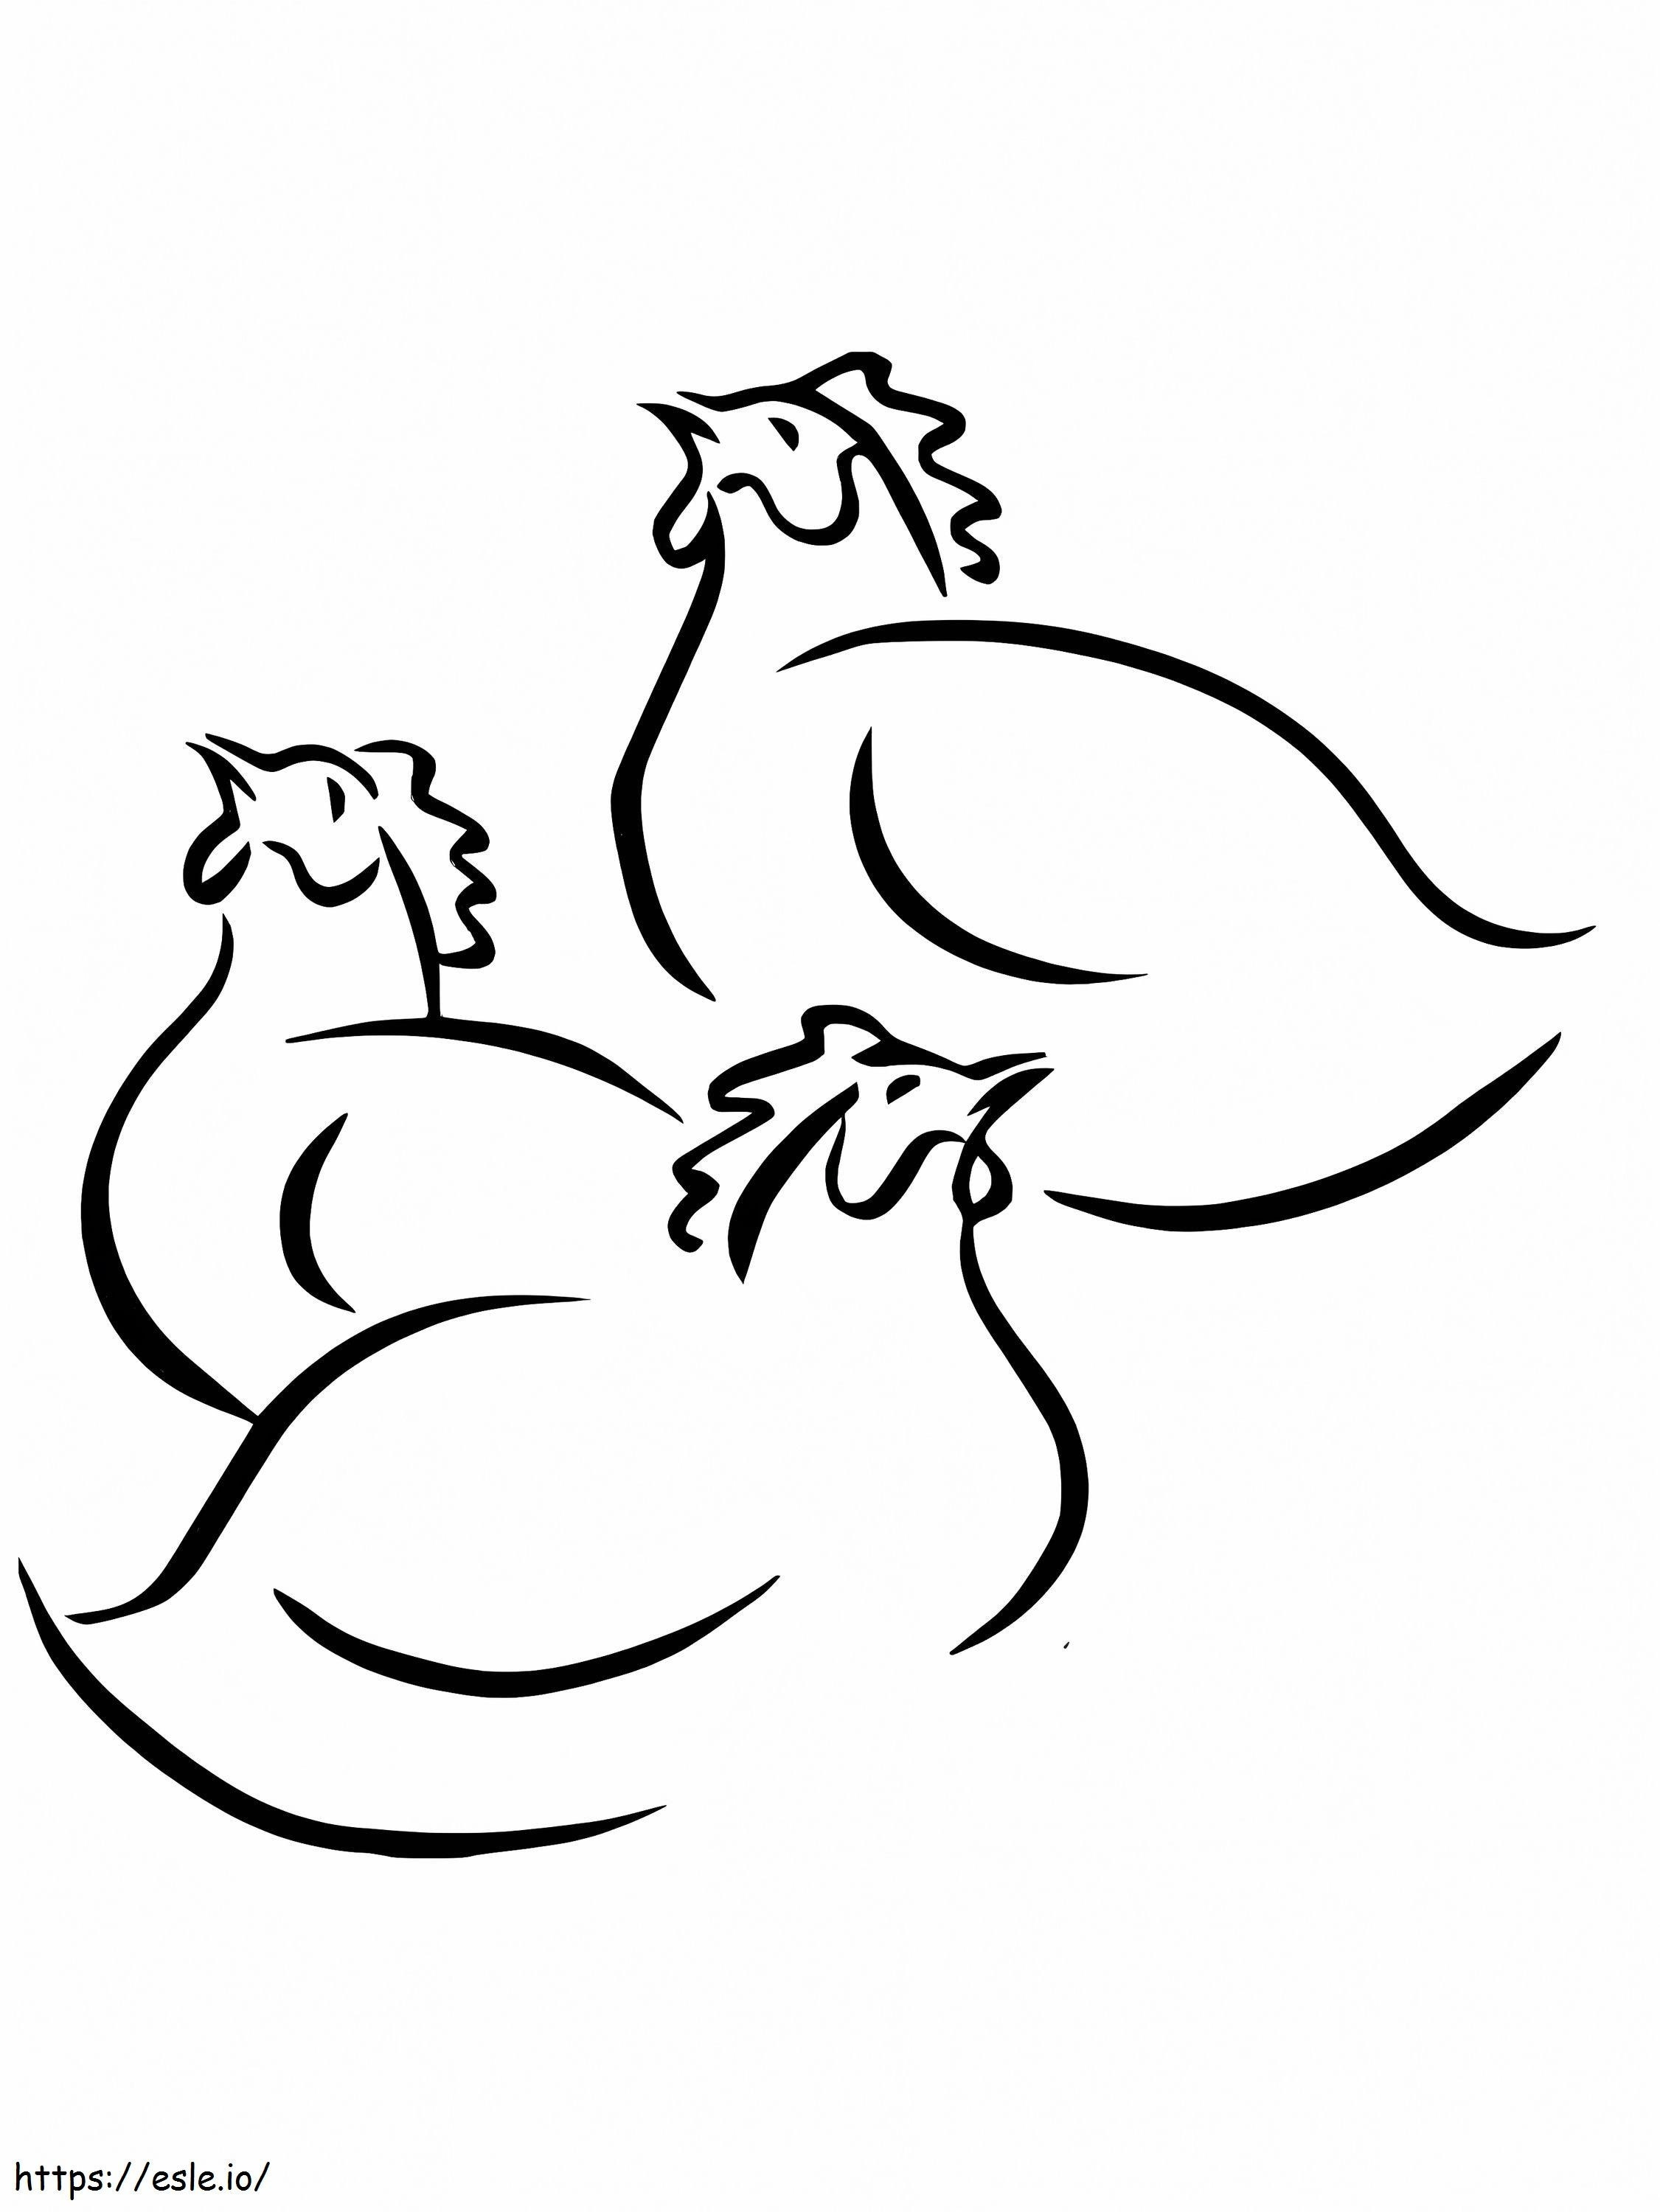 Drei französische Hühner ausmalbilder